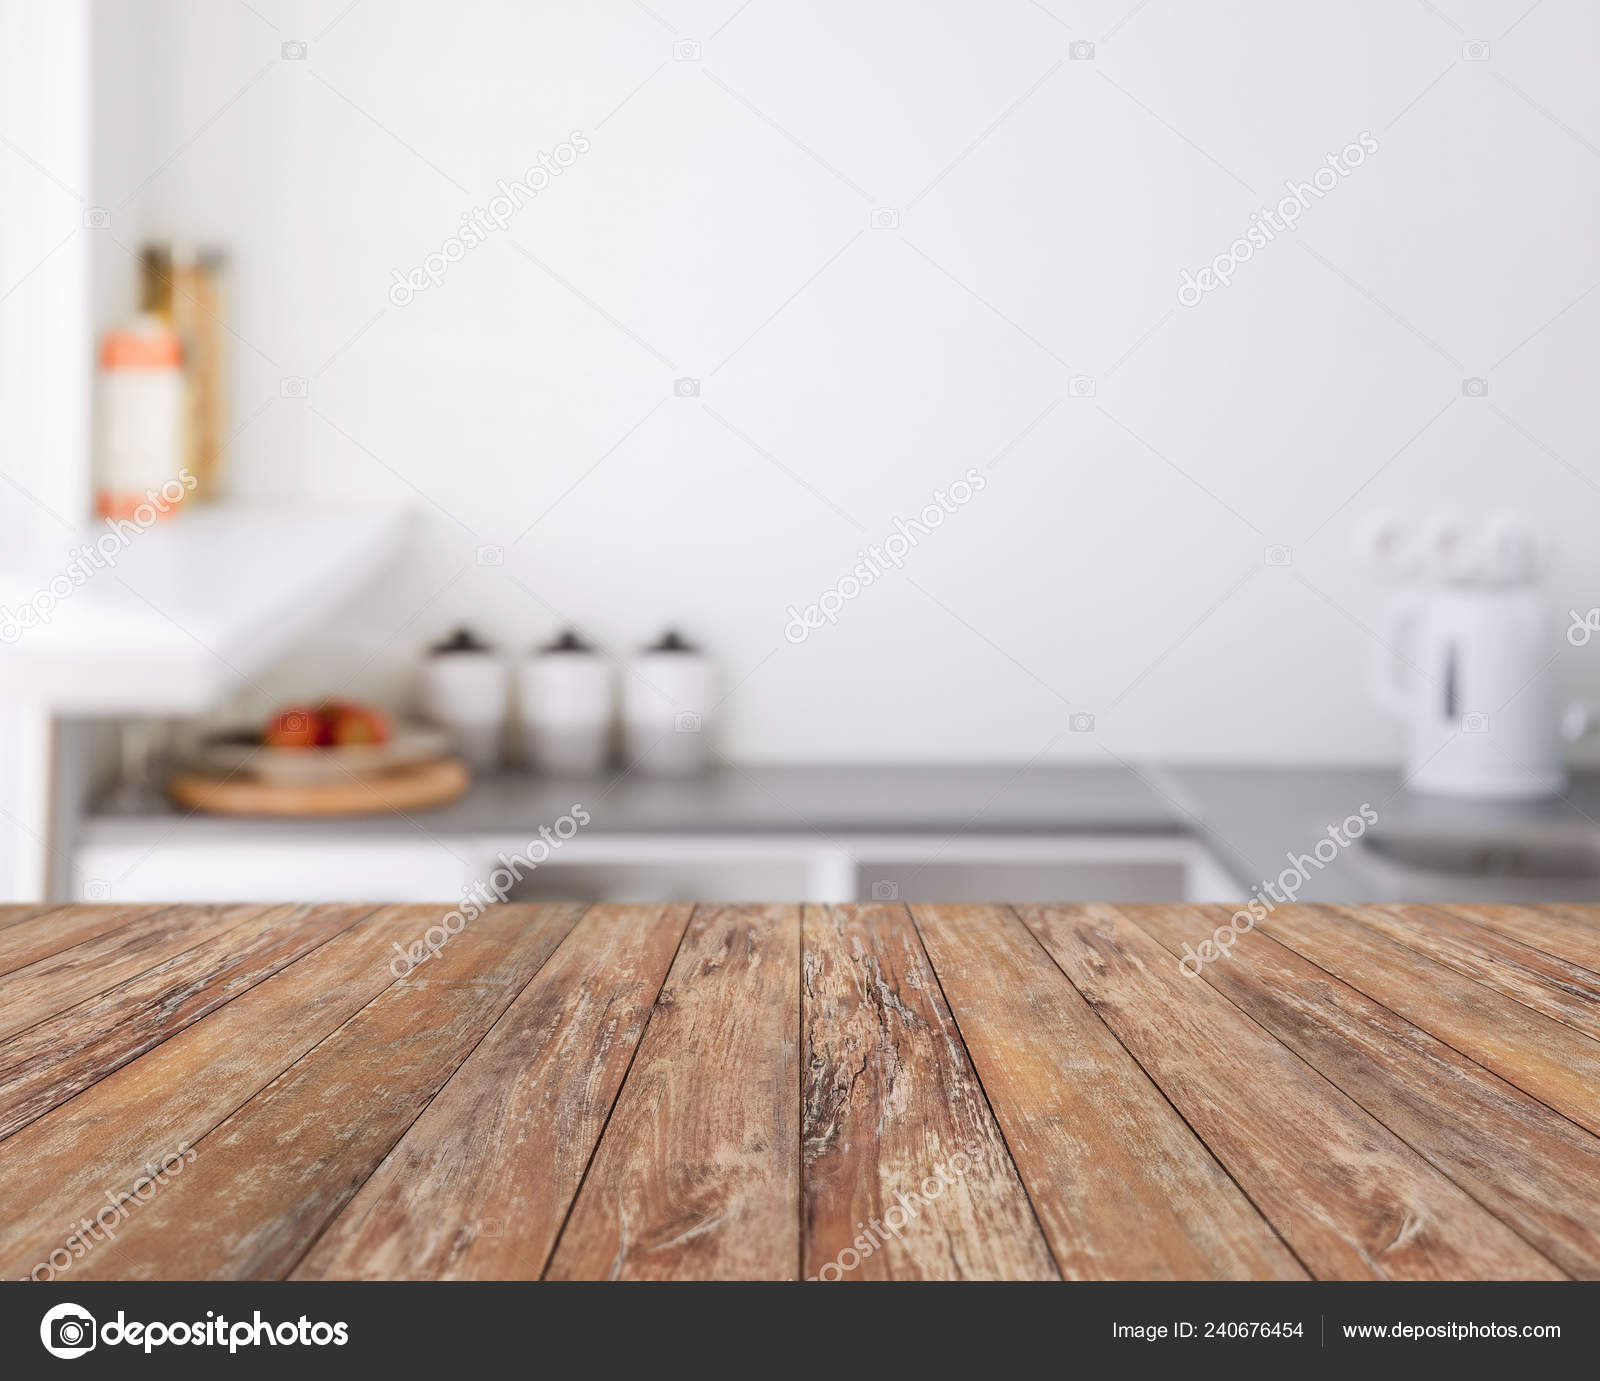 Nền tảng nhà bếp với tấm ván gỗ mang đến cho căn bếp một vẻ đẹp mờ mịt và cổ điển. Bạn có thể tự tay làm nền tảng này và lựa chọn những tấm ván gỗ chất lượng để đảm bảo tính lâu bền. Xem hình ảnh liên quan đến từ khóa này để được trải nghiệm không gian nhà bếp tuyệt vời với tấm ván gỗ.